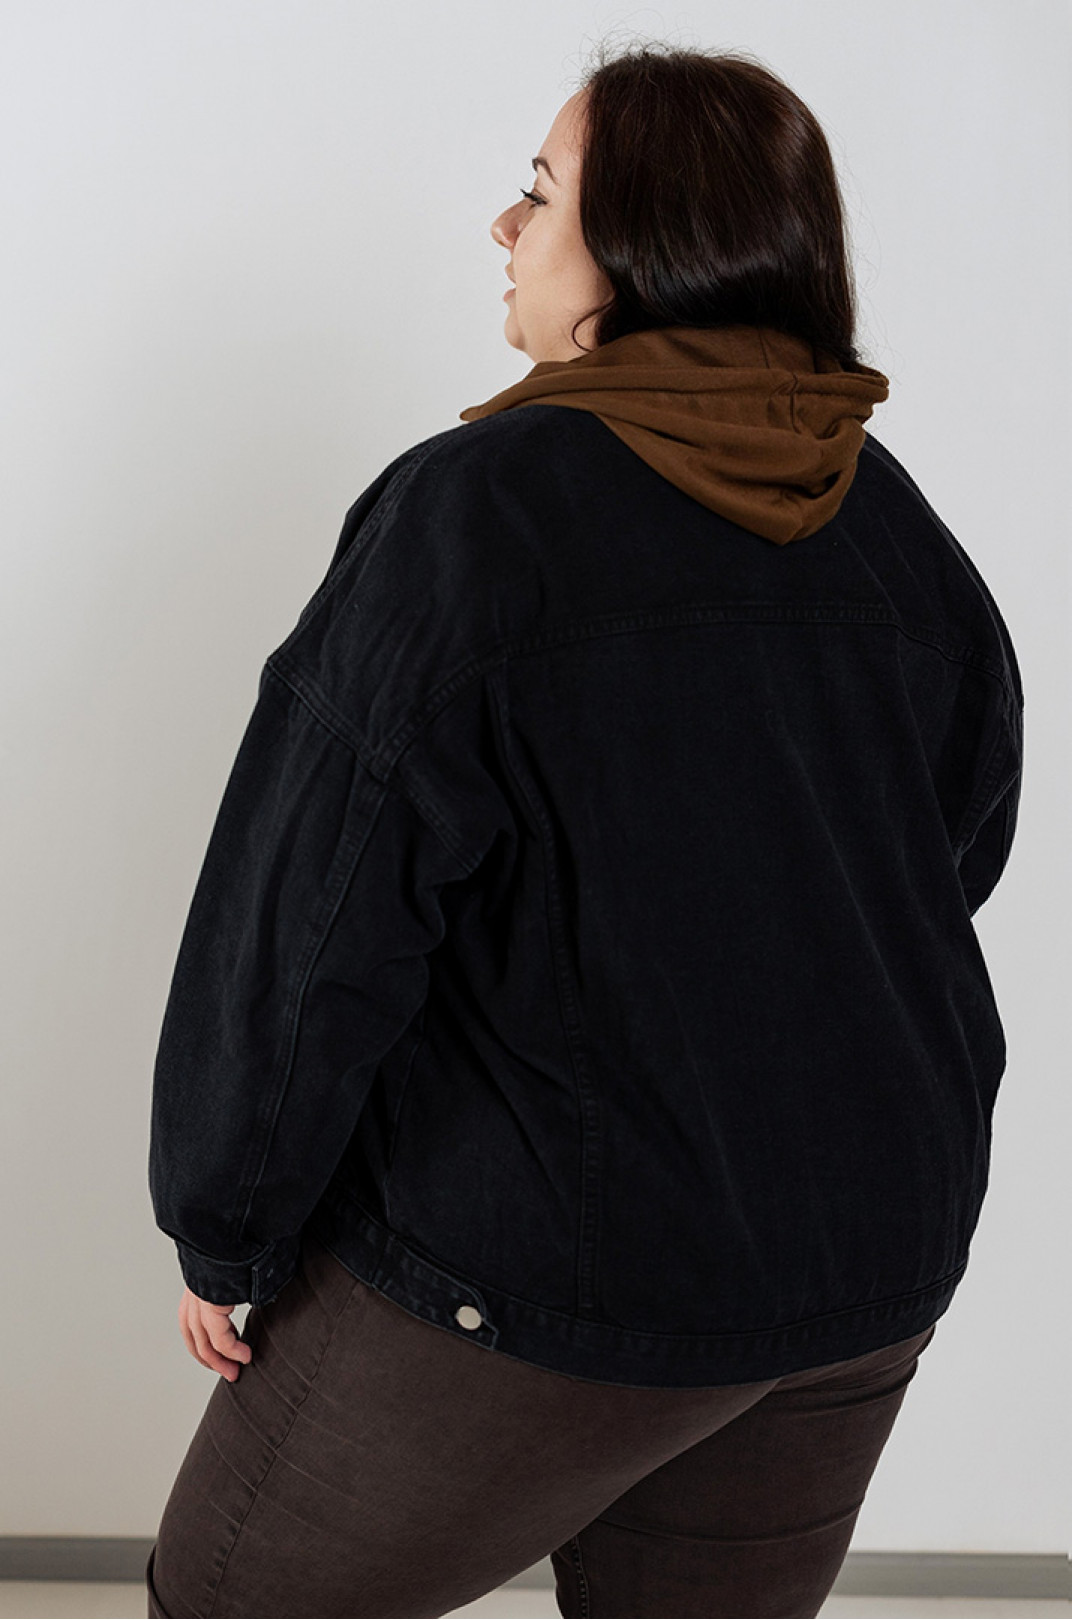 Джинсовая графитовая куртка с капюшоном больших размеров